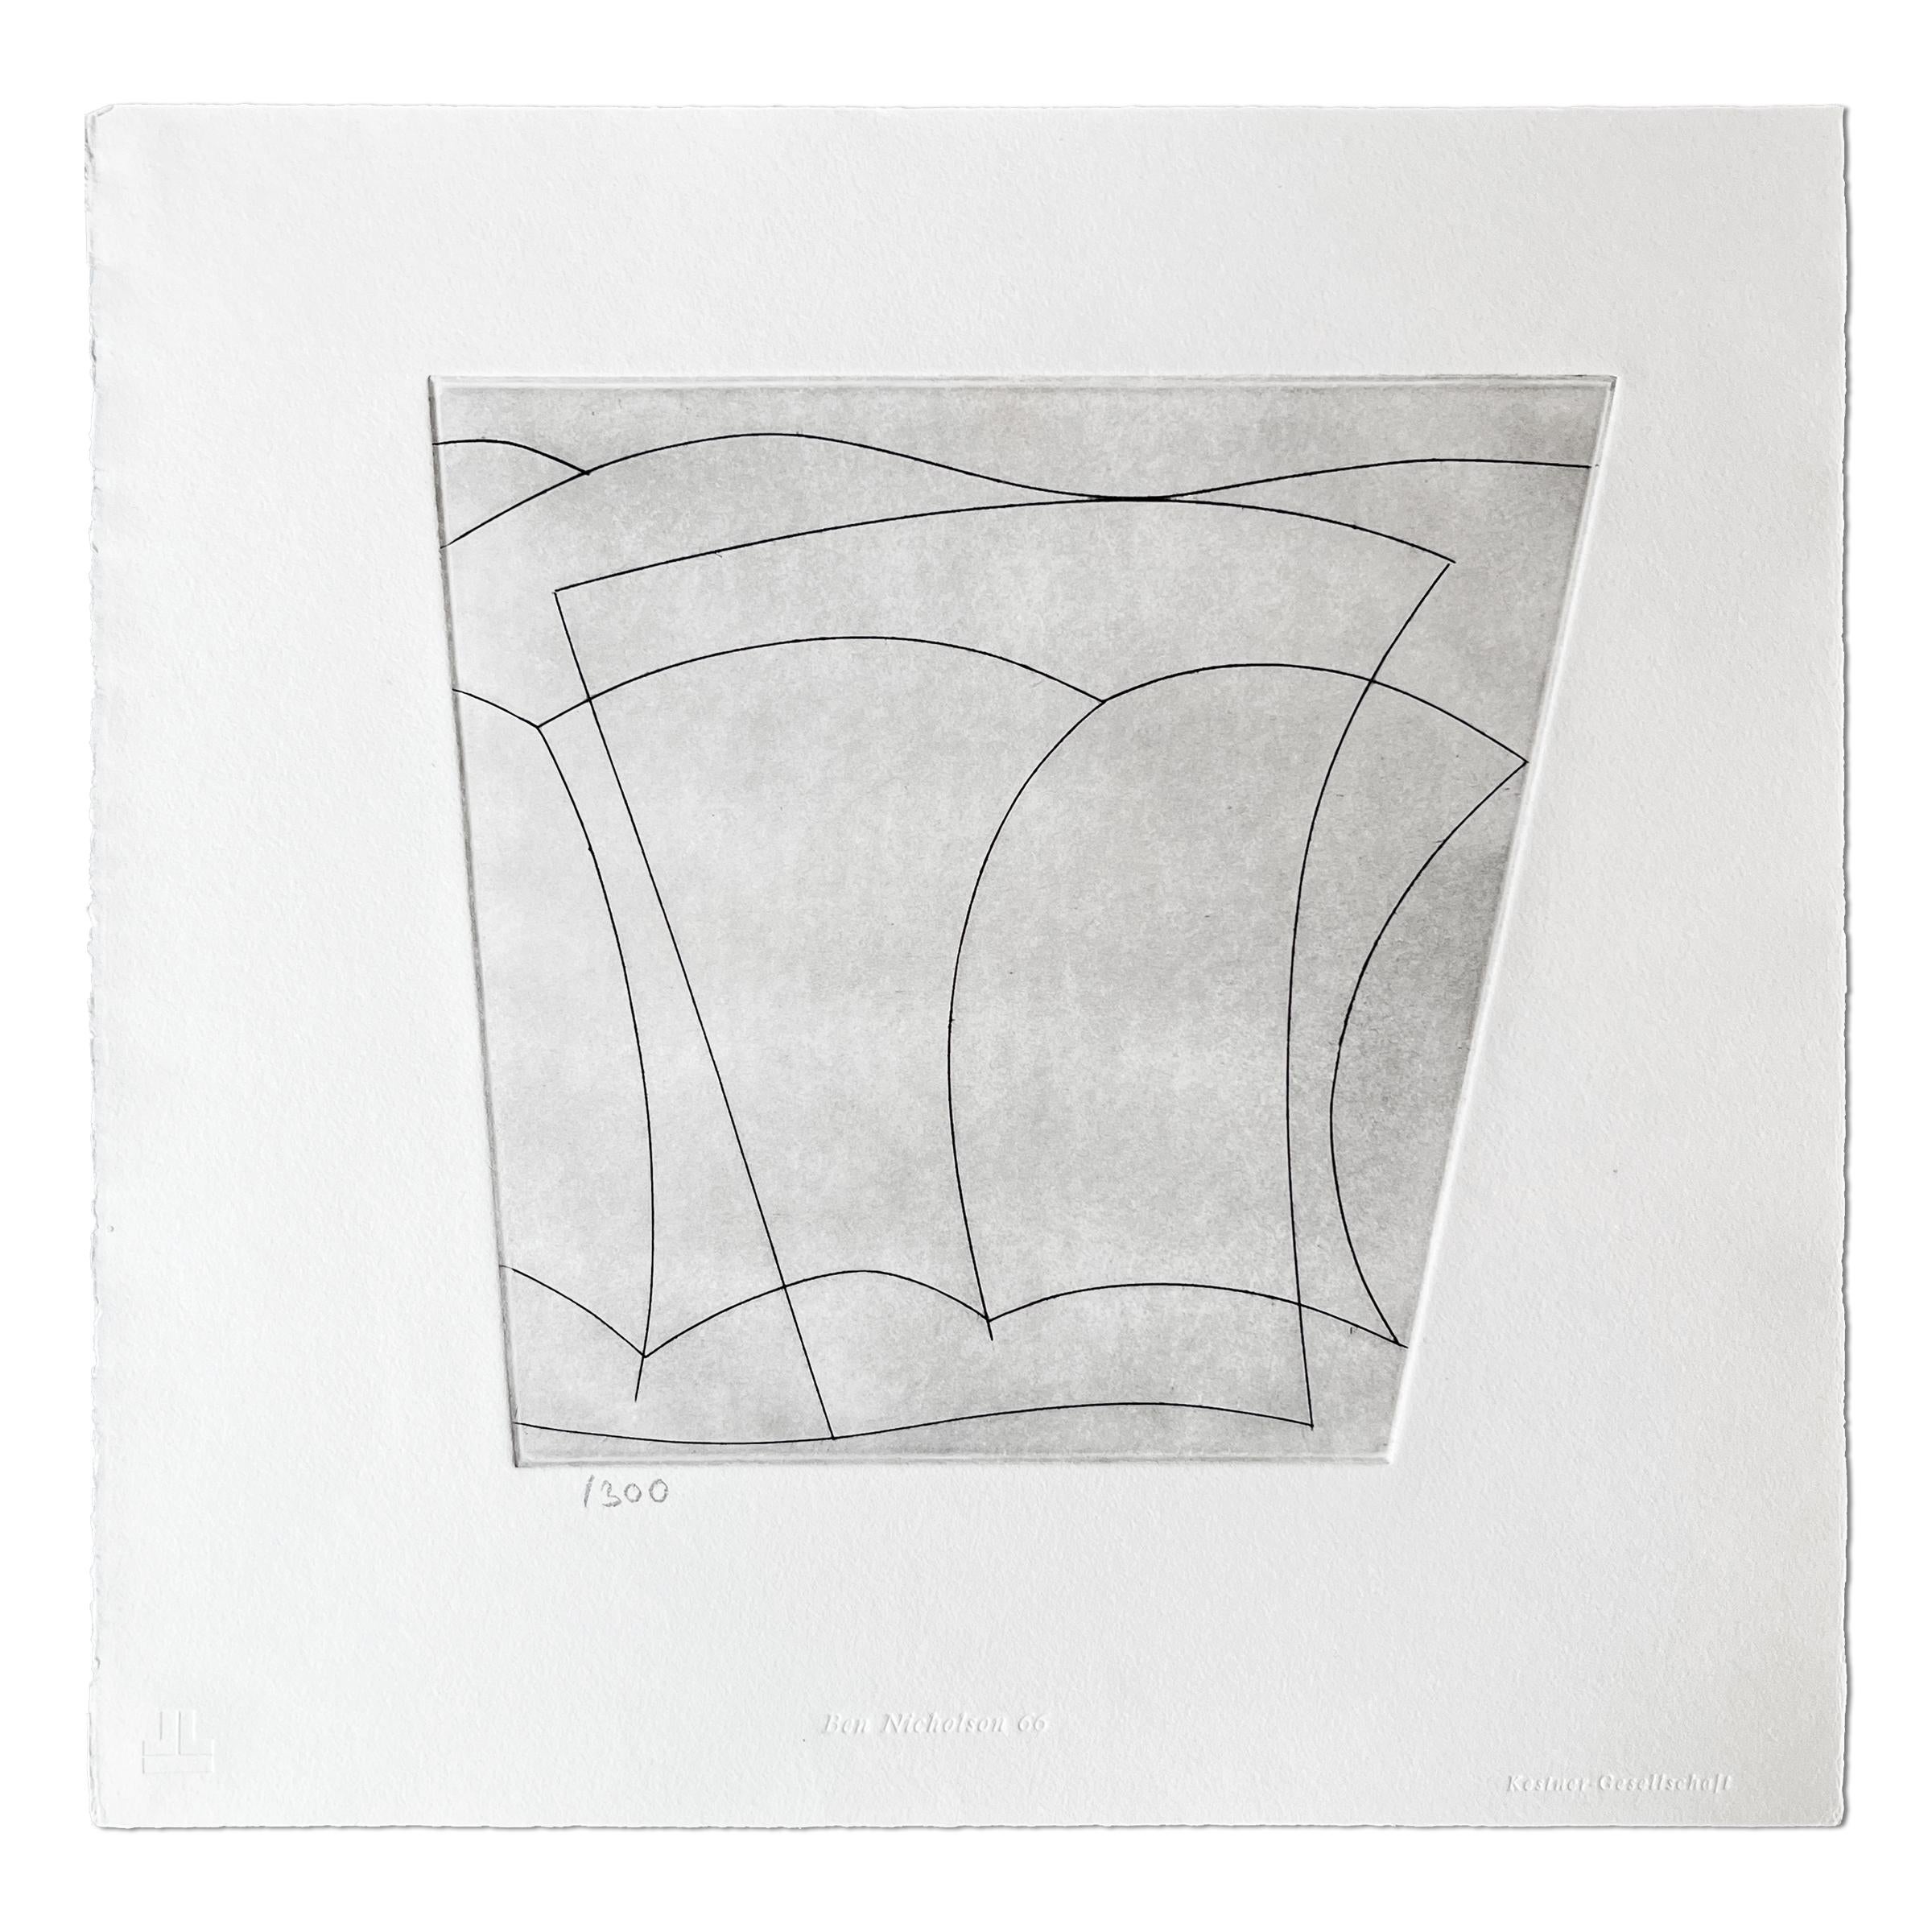 Ben Nicholson (britannique, 1894-1982)
Formes dans le paysage, 1966
support : Gravure sur papier vélin
Dimensions : 12 2/5 × 12 7/10 in  31.6 × 32.2 cm
Édition de 300 exemplaires : numérotés au crayon, non signés
Condit : Très bon